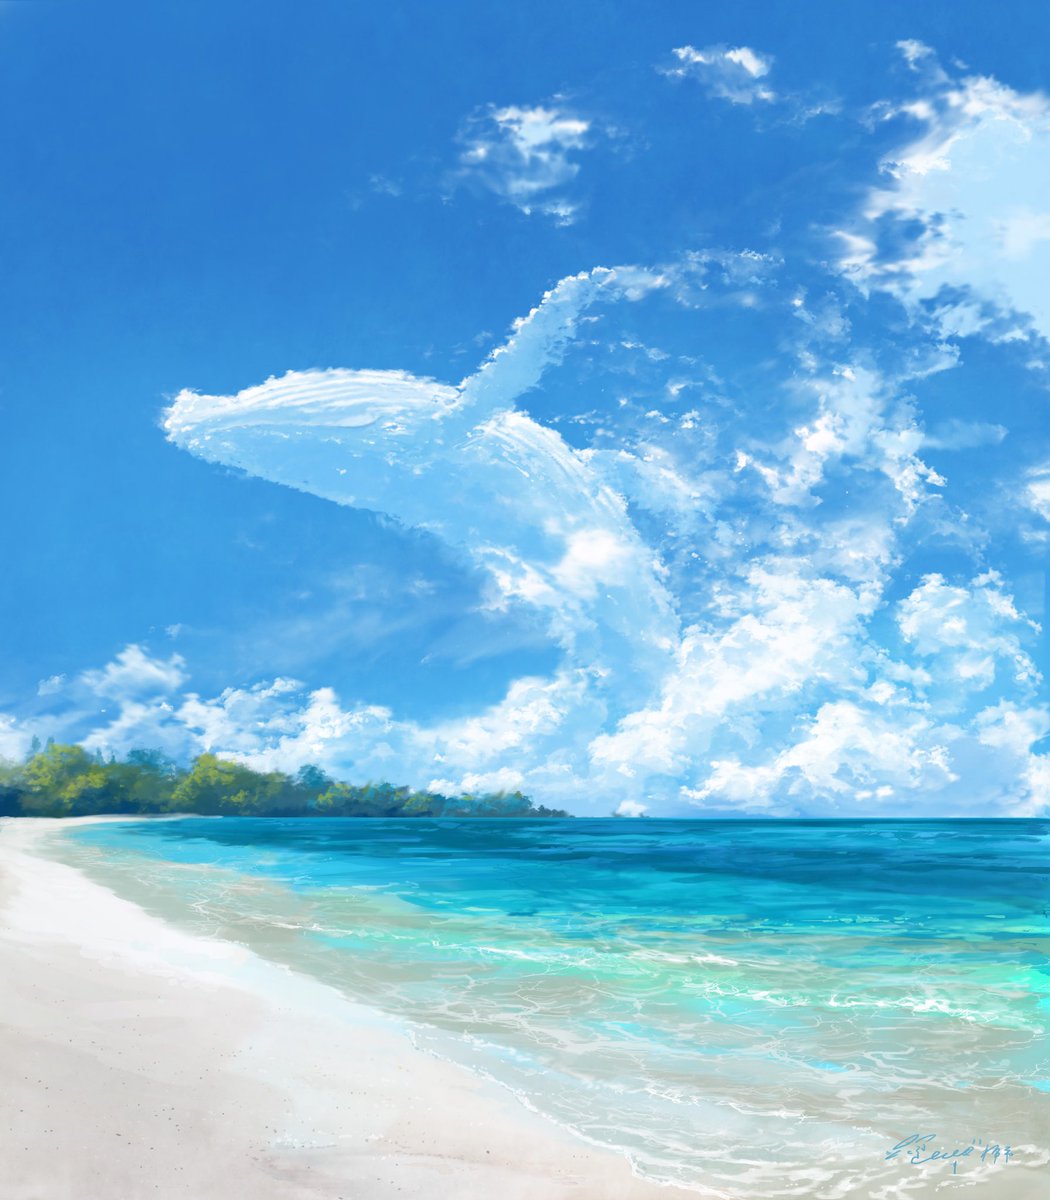 「今年描いた雲。☁️ 」|はち@まんぷくアートスタジオ/イラストレーターのイラスト